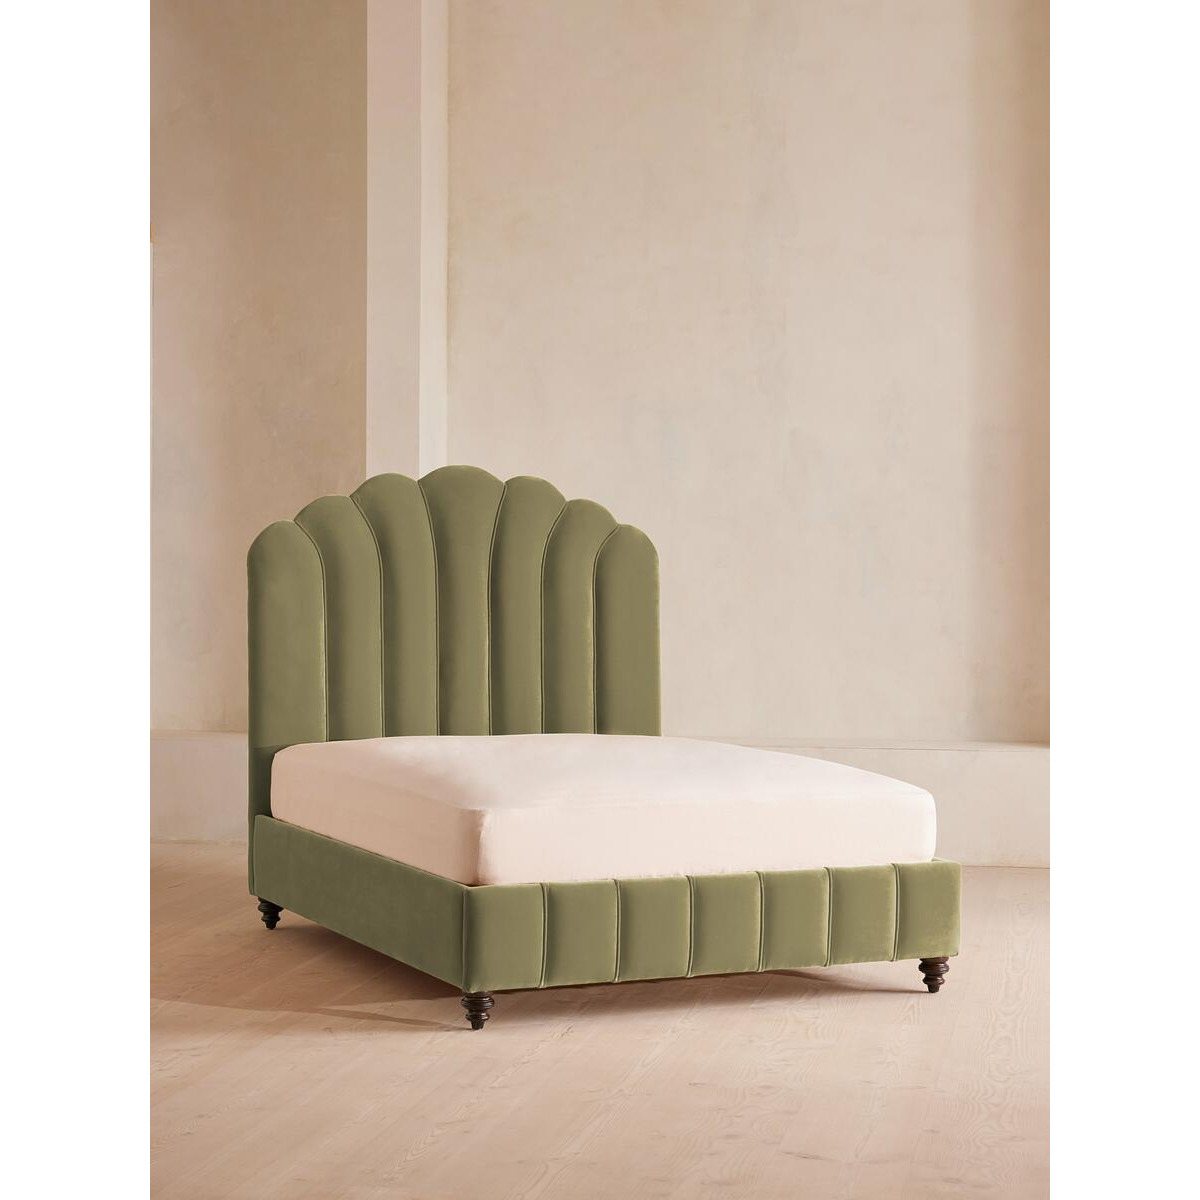 Manette Velvet Lichen Double Bed - Art Deco-Inspired Design